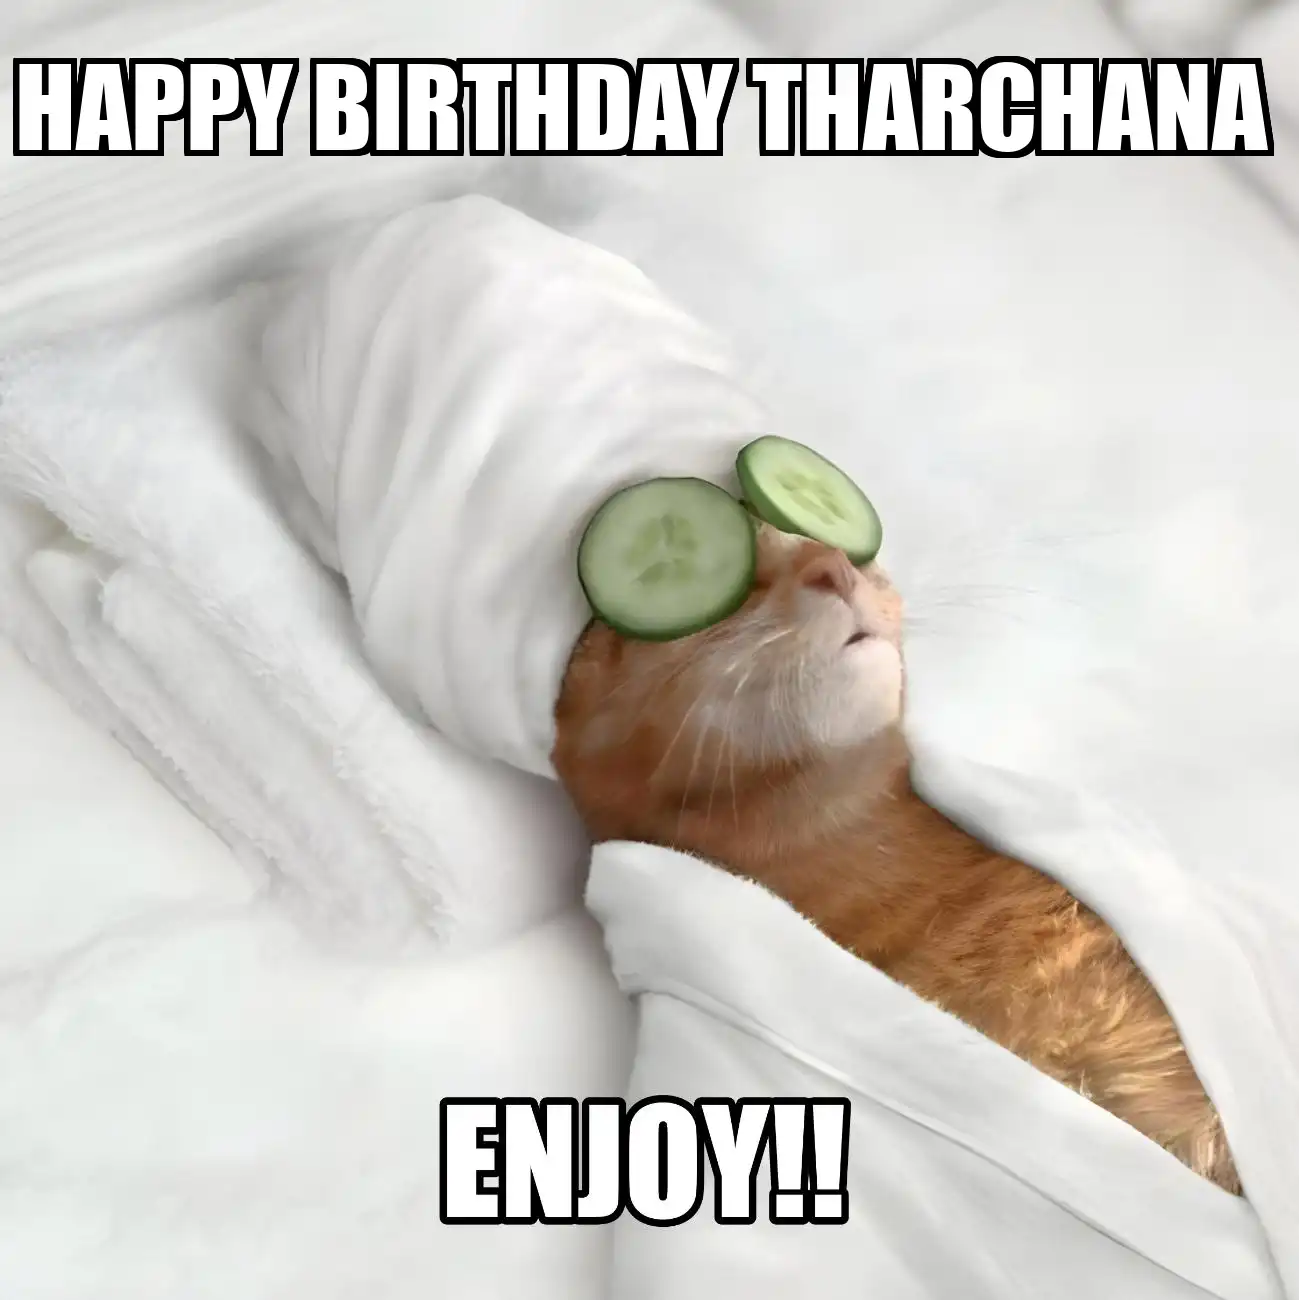 Happy Birthday Tharchana Enjoy Cat Meme